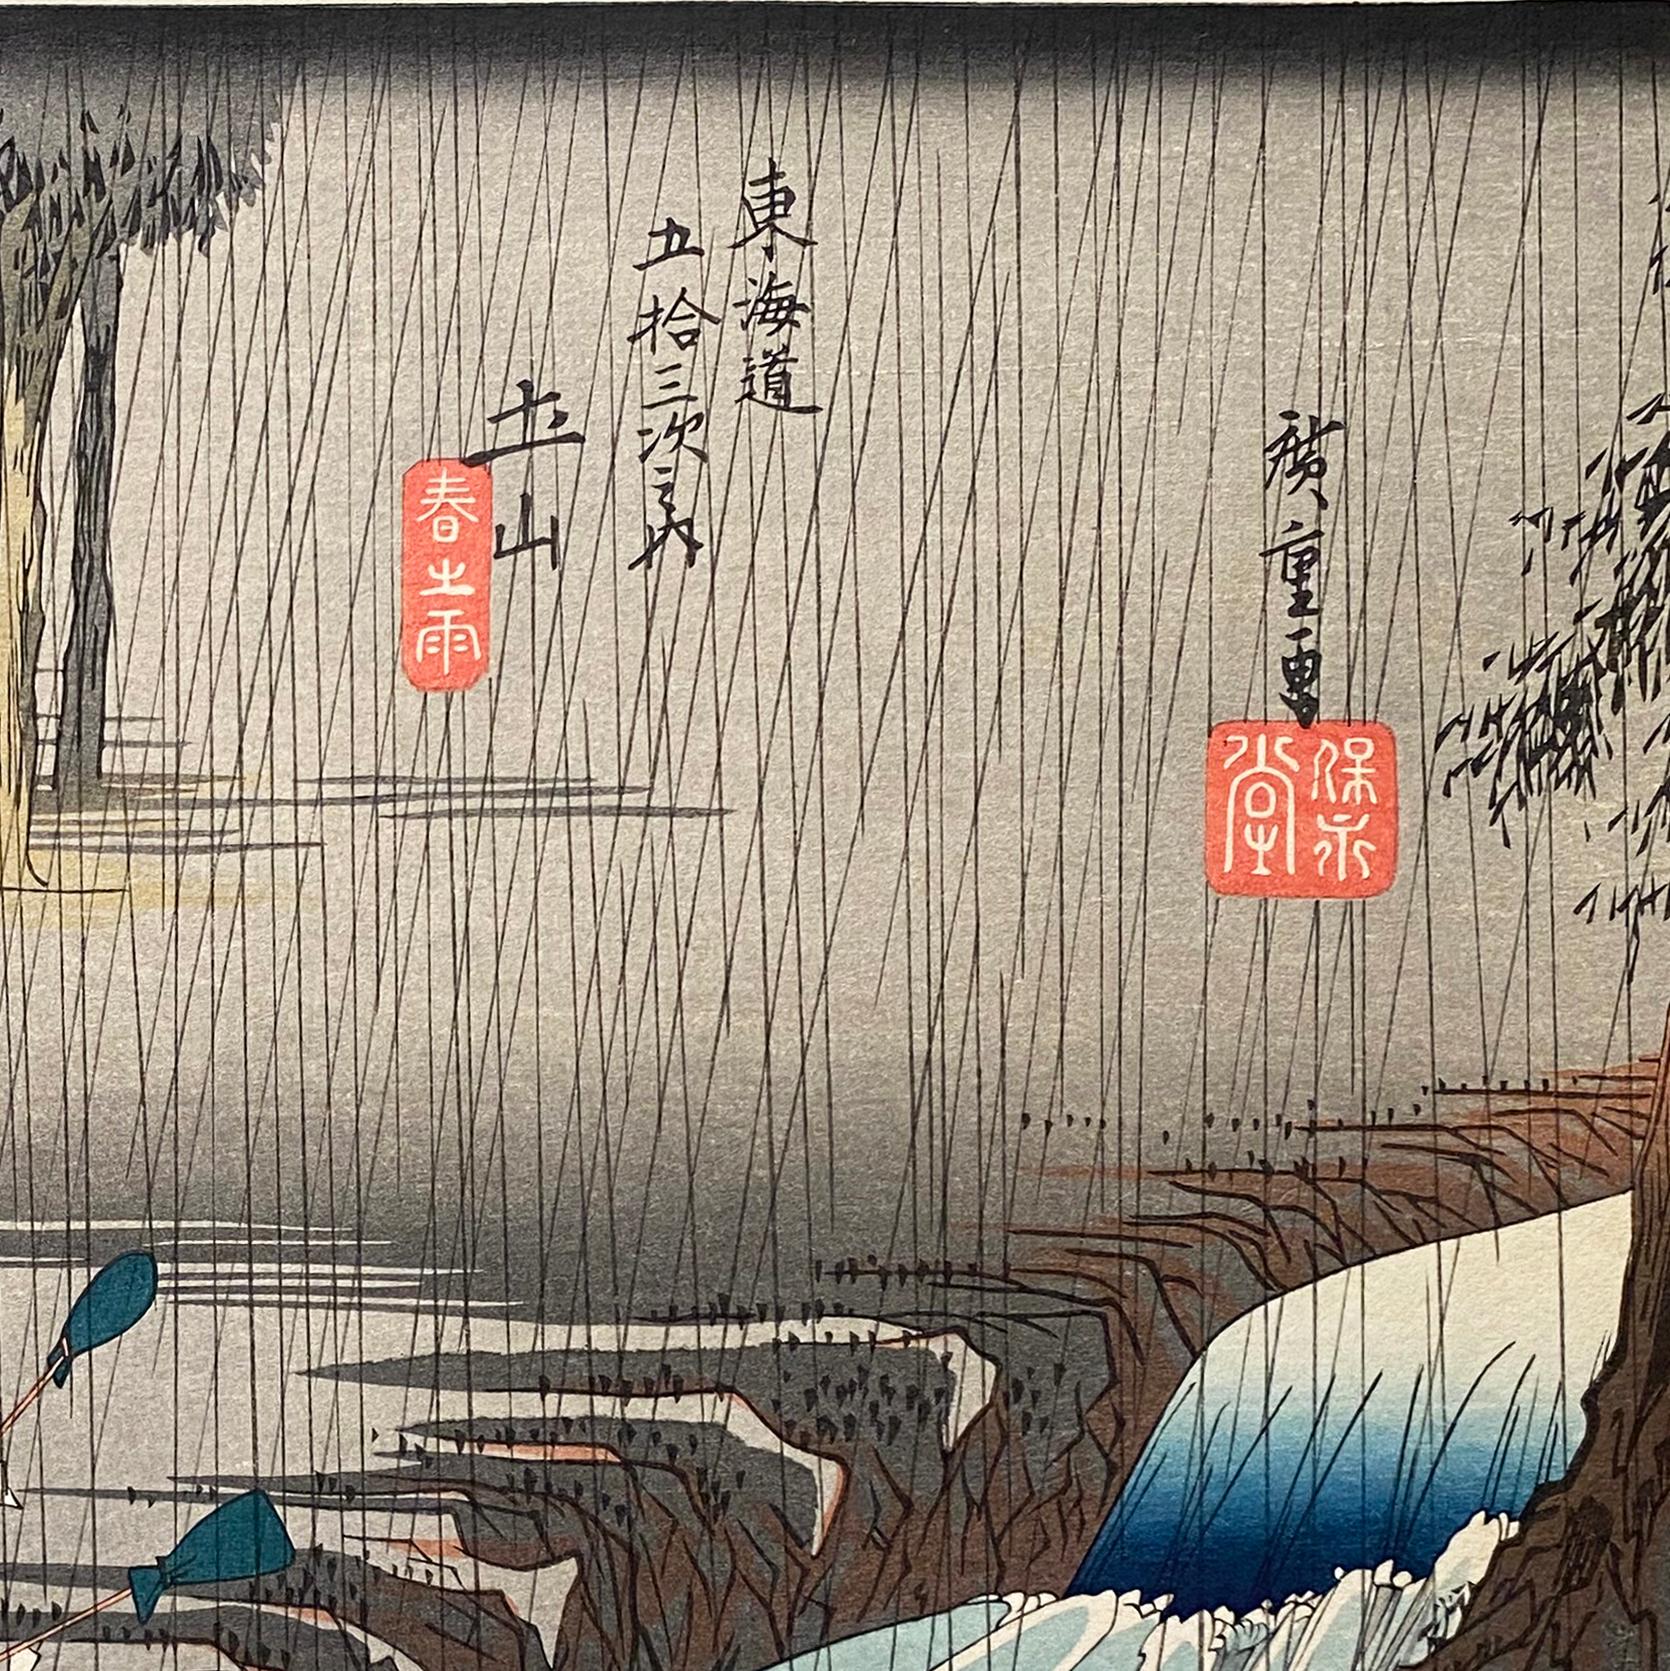 Vue de Tsuchiyama, d'après Utagawa Hiroshige 歌川廣重, gravure sur bois Ukiyo-e, Tokaido - Print de Utagawa Hiroshige (Ando Hiroshige)